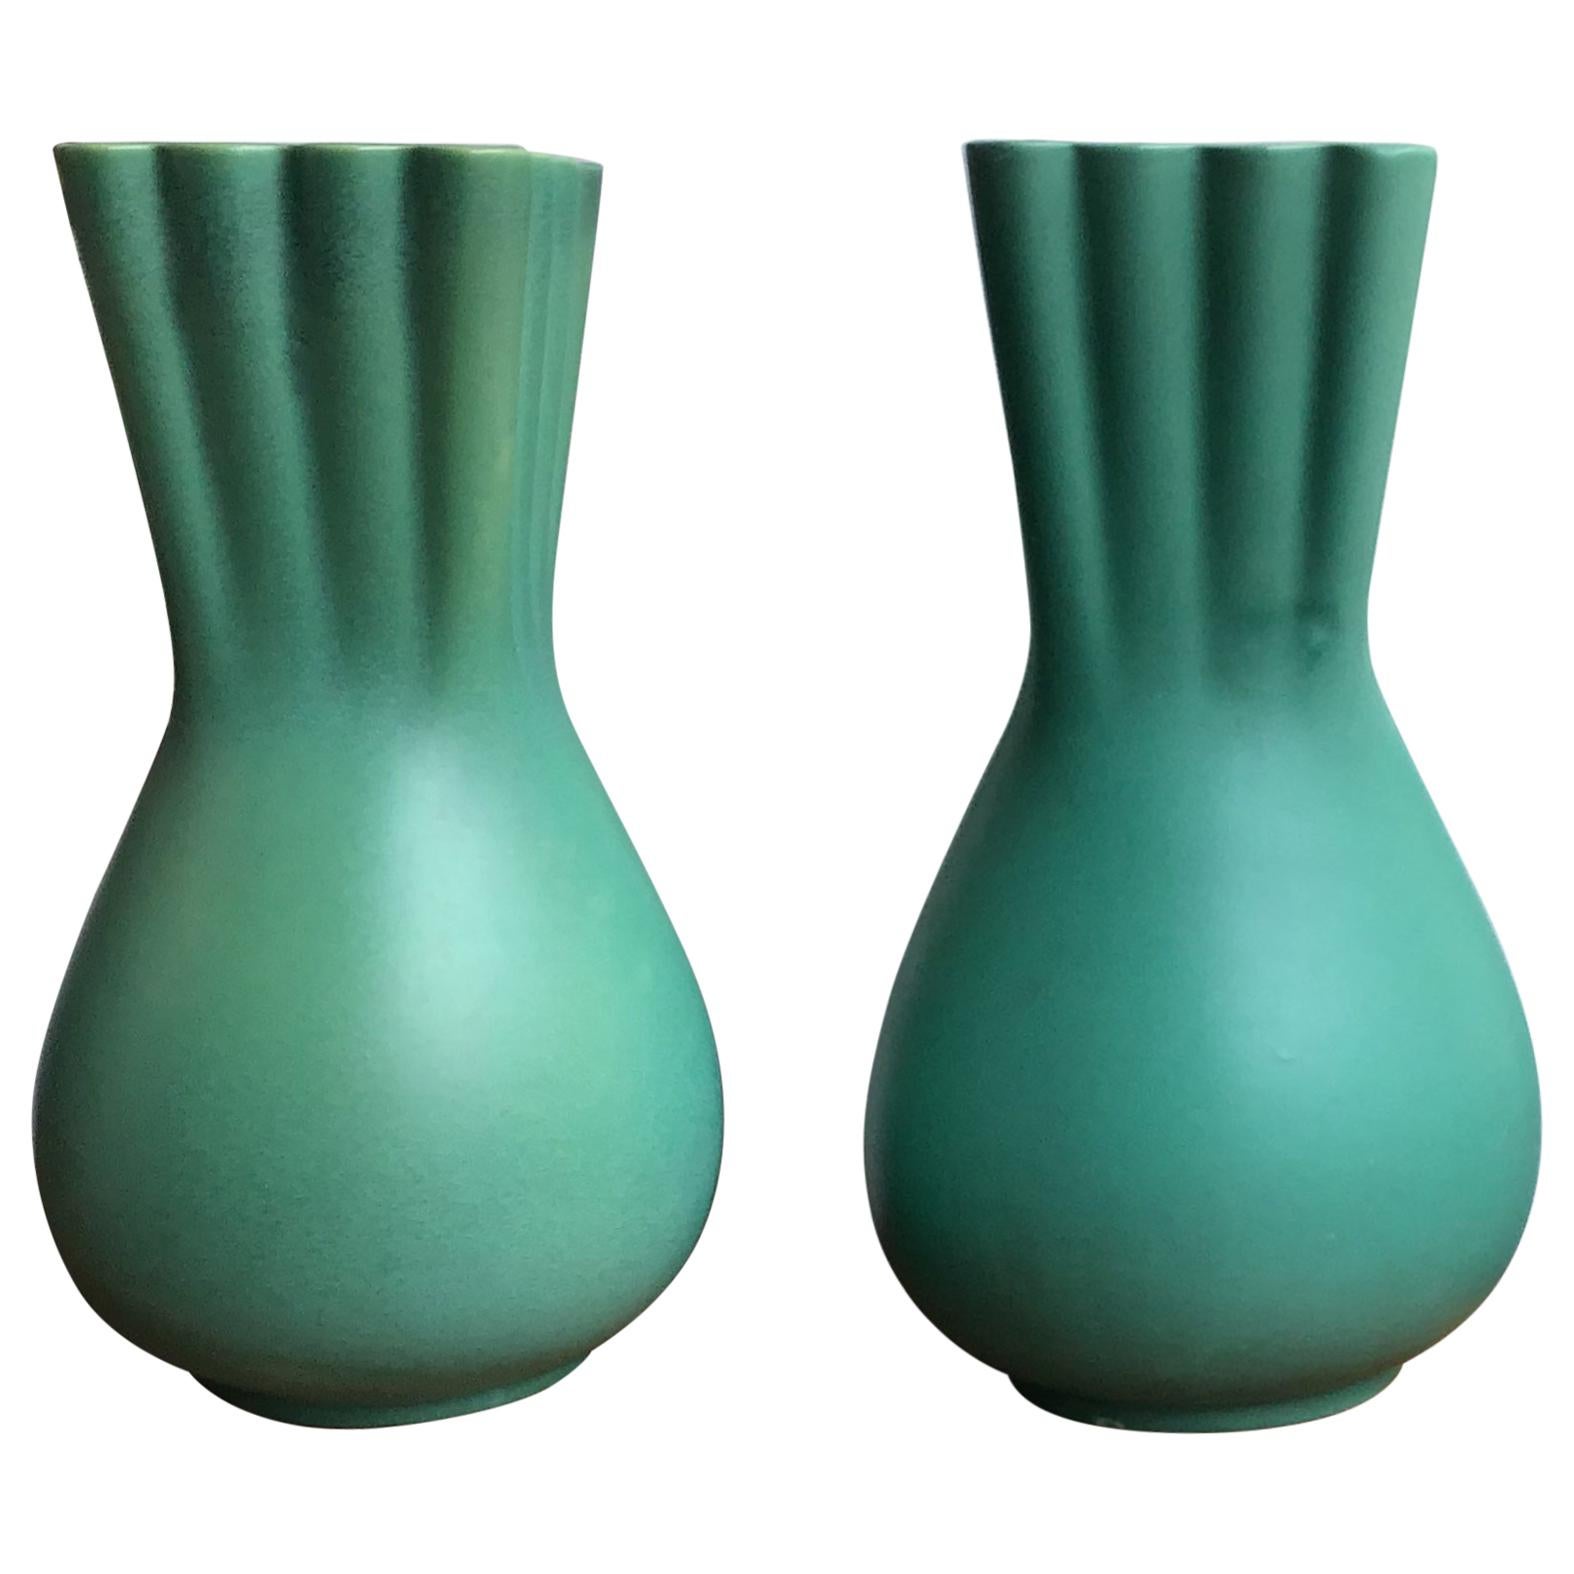 Richard Ginori Giovanni Gariboldi Green Vase Ceramic, 1950, Italy